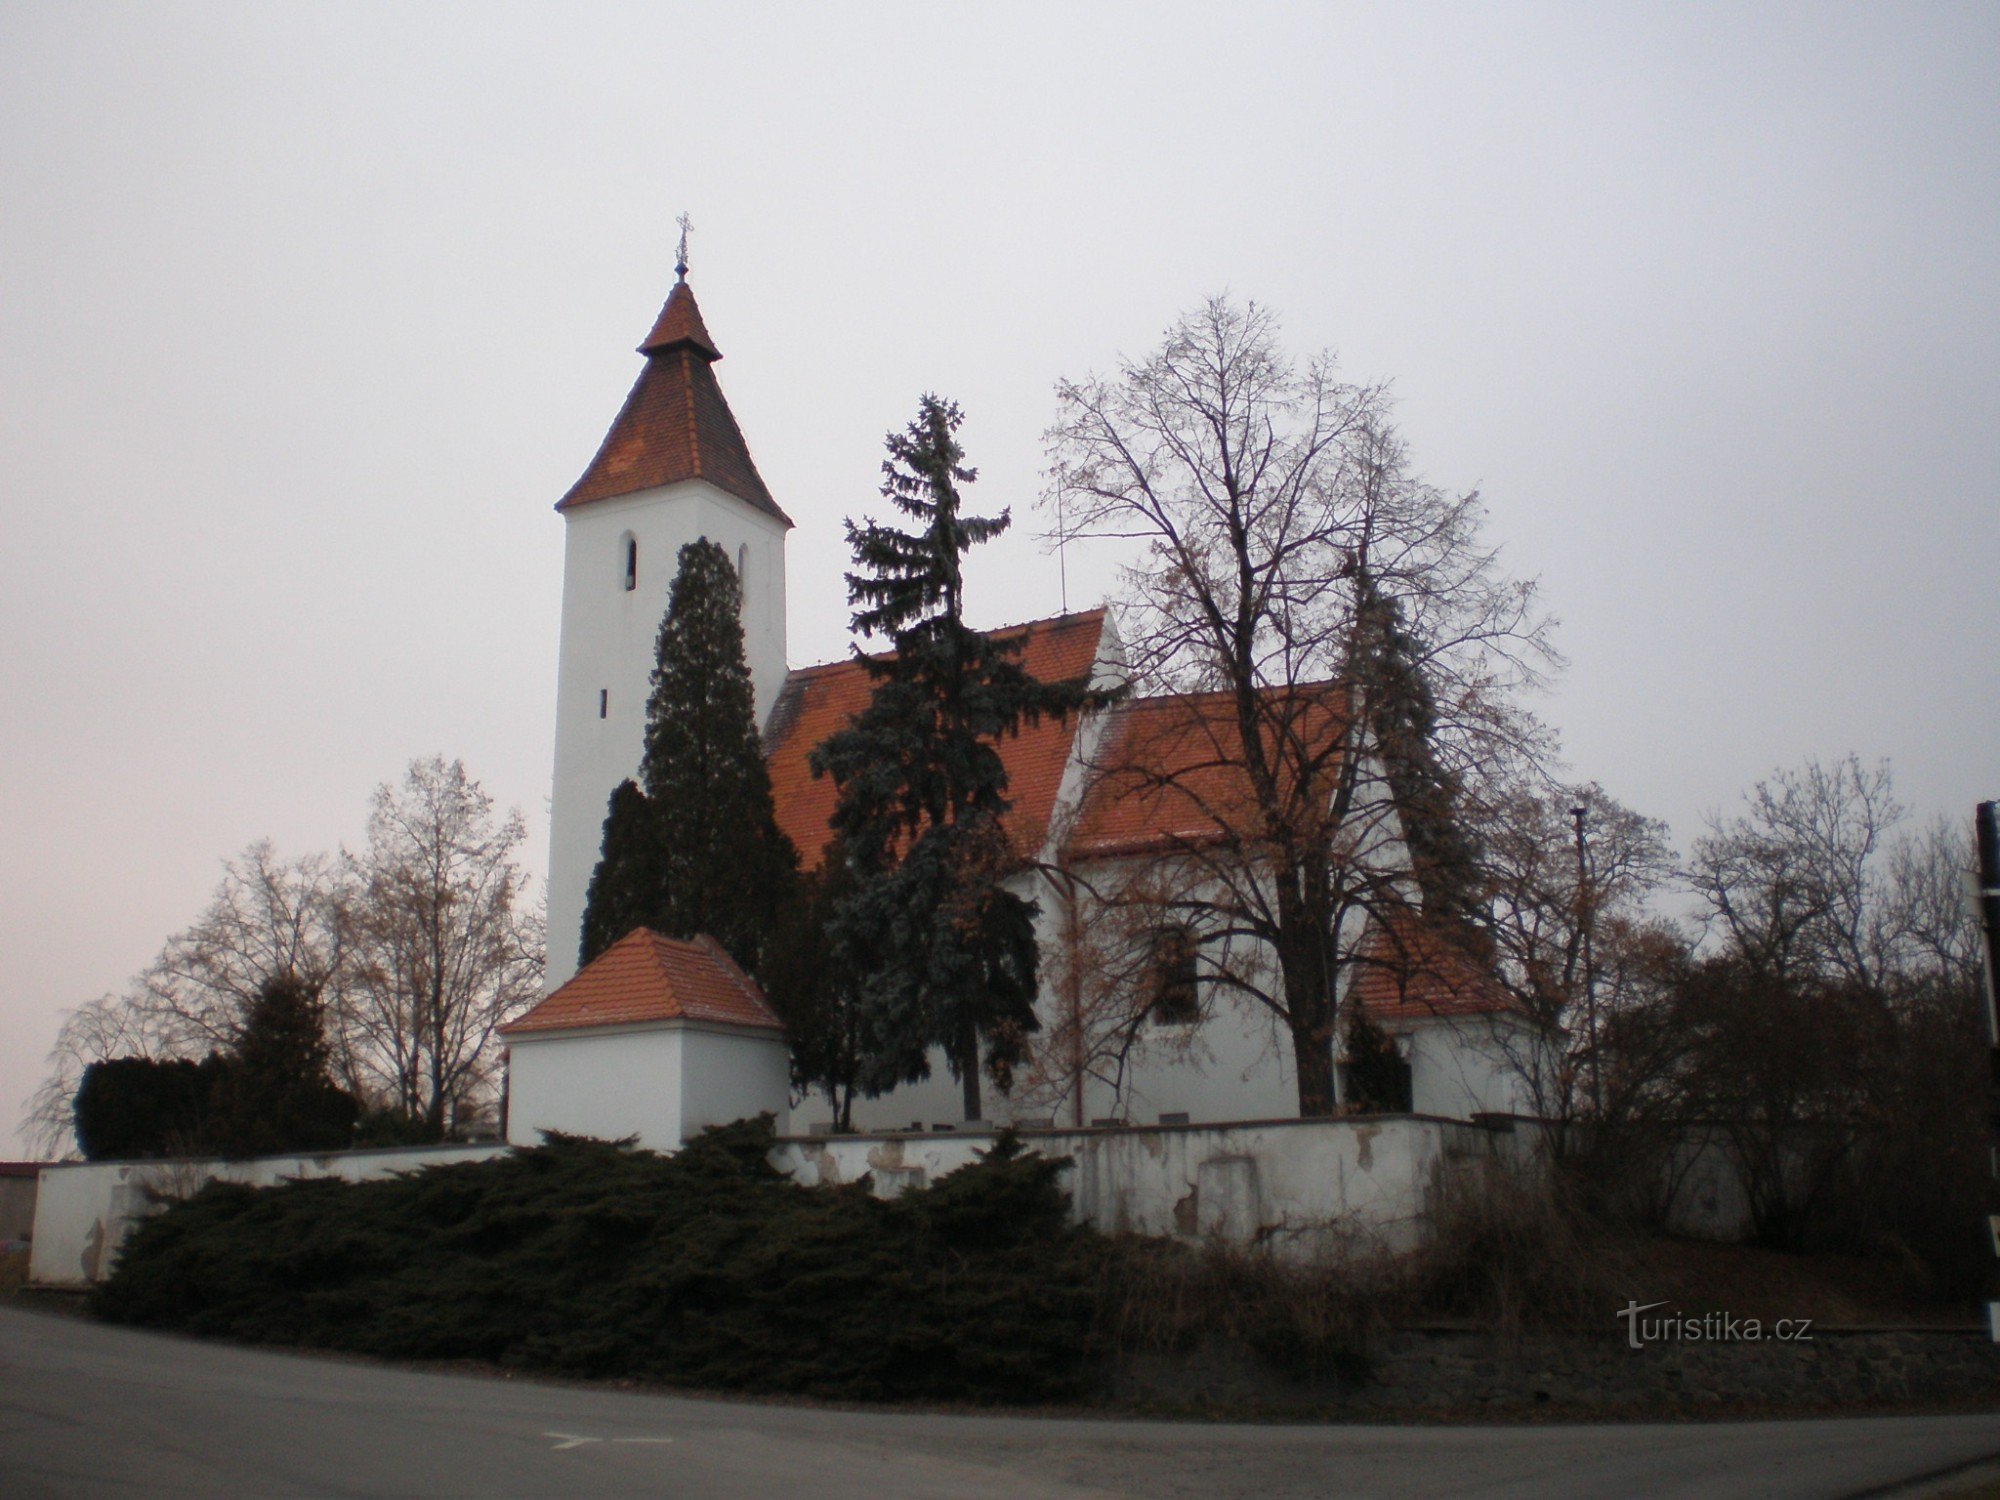 Hovorčovice - Nhà thờ Chúa giáng sinh của St. John the Baptist